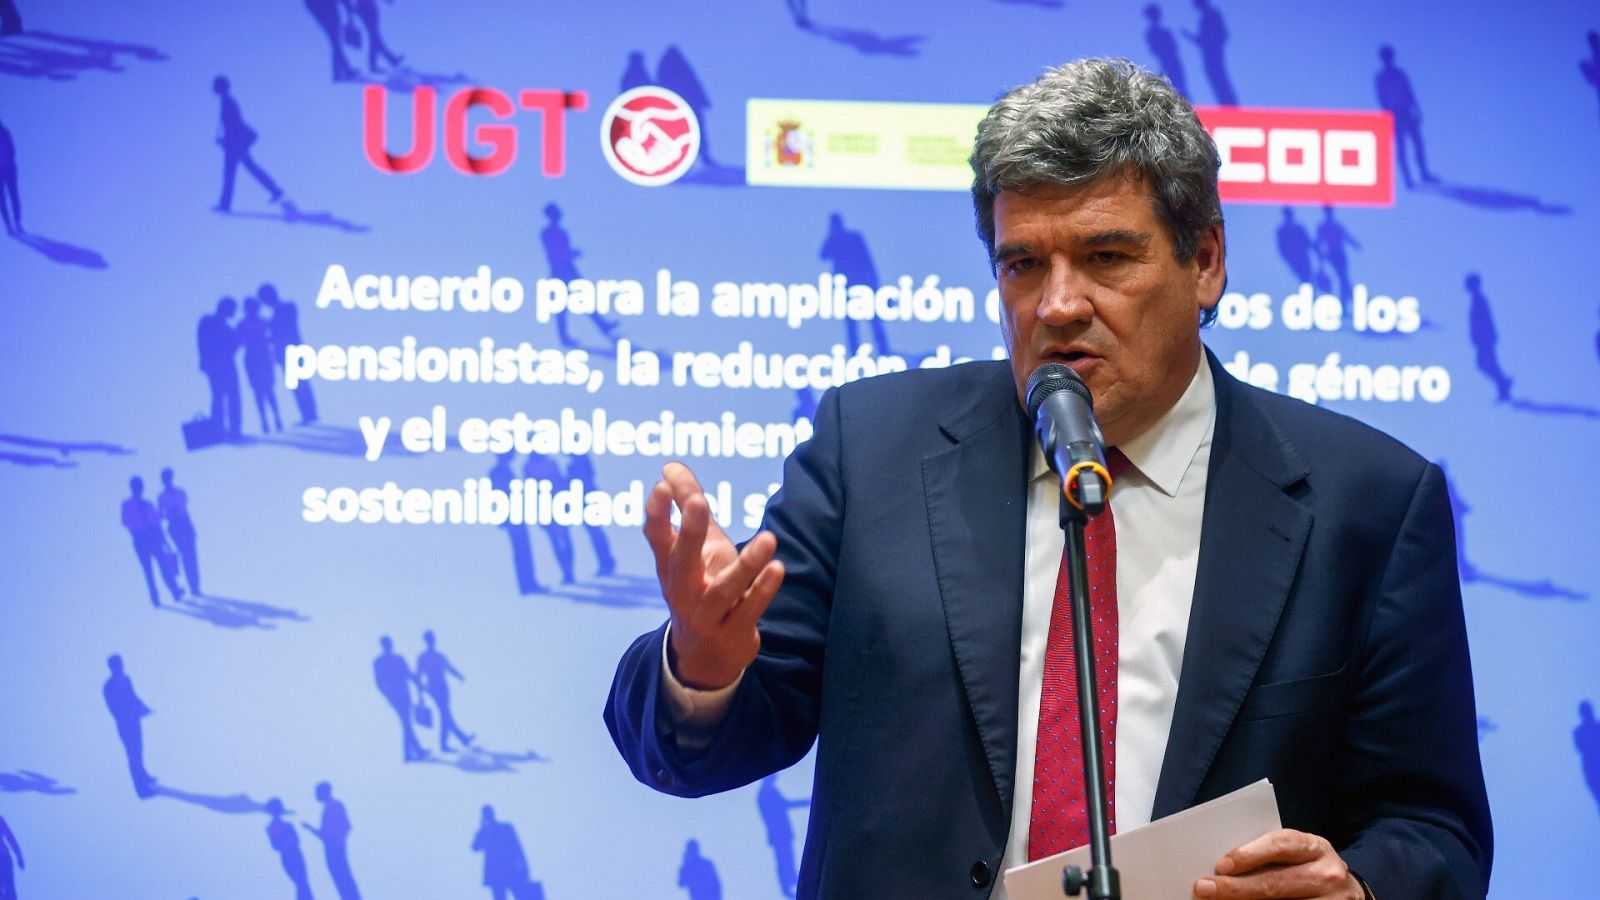 El ministro de Inclusión y Seguridad Social, José Luis Escrivá, tras la firma del acuerdo de las pensiones